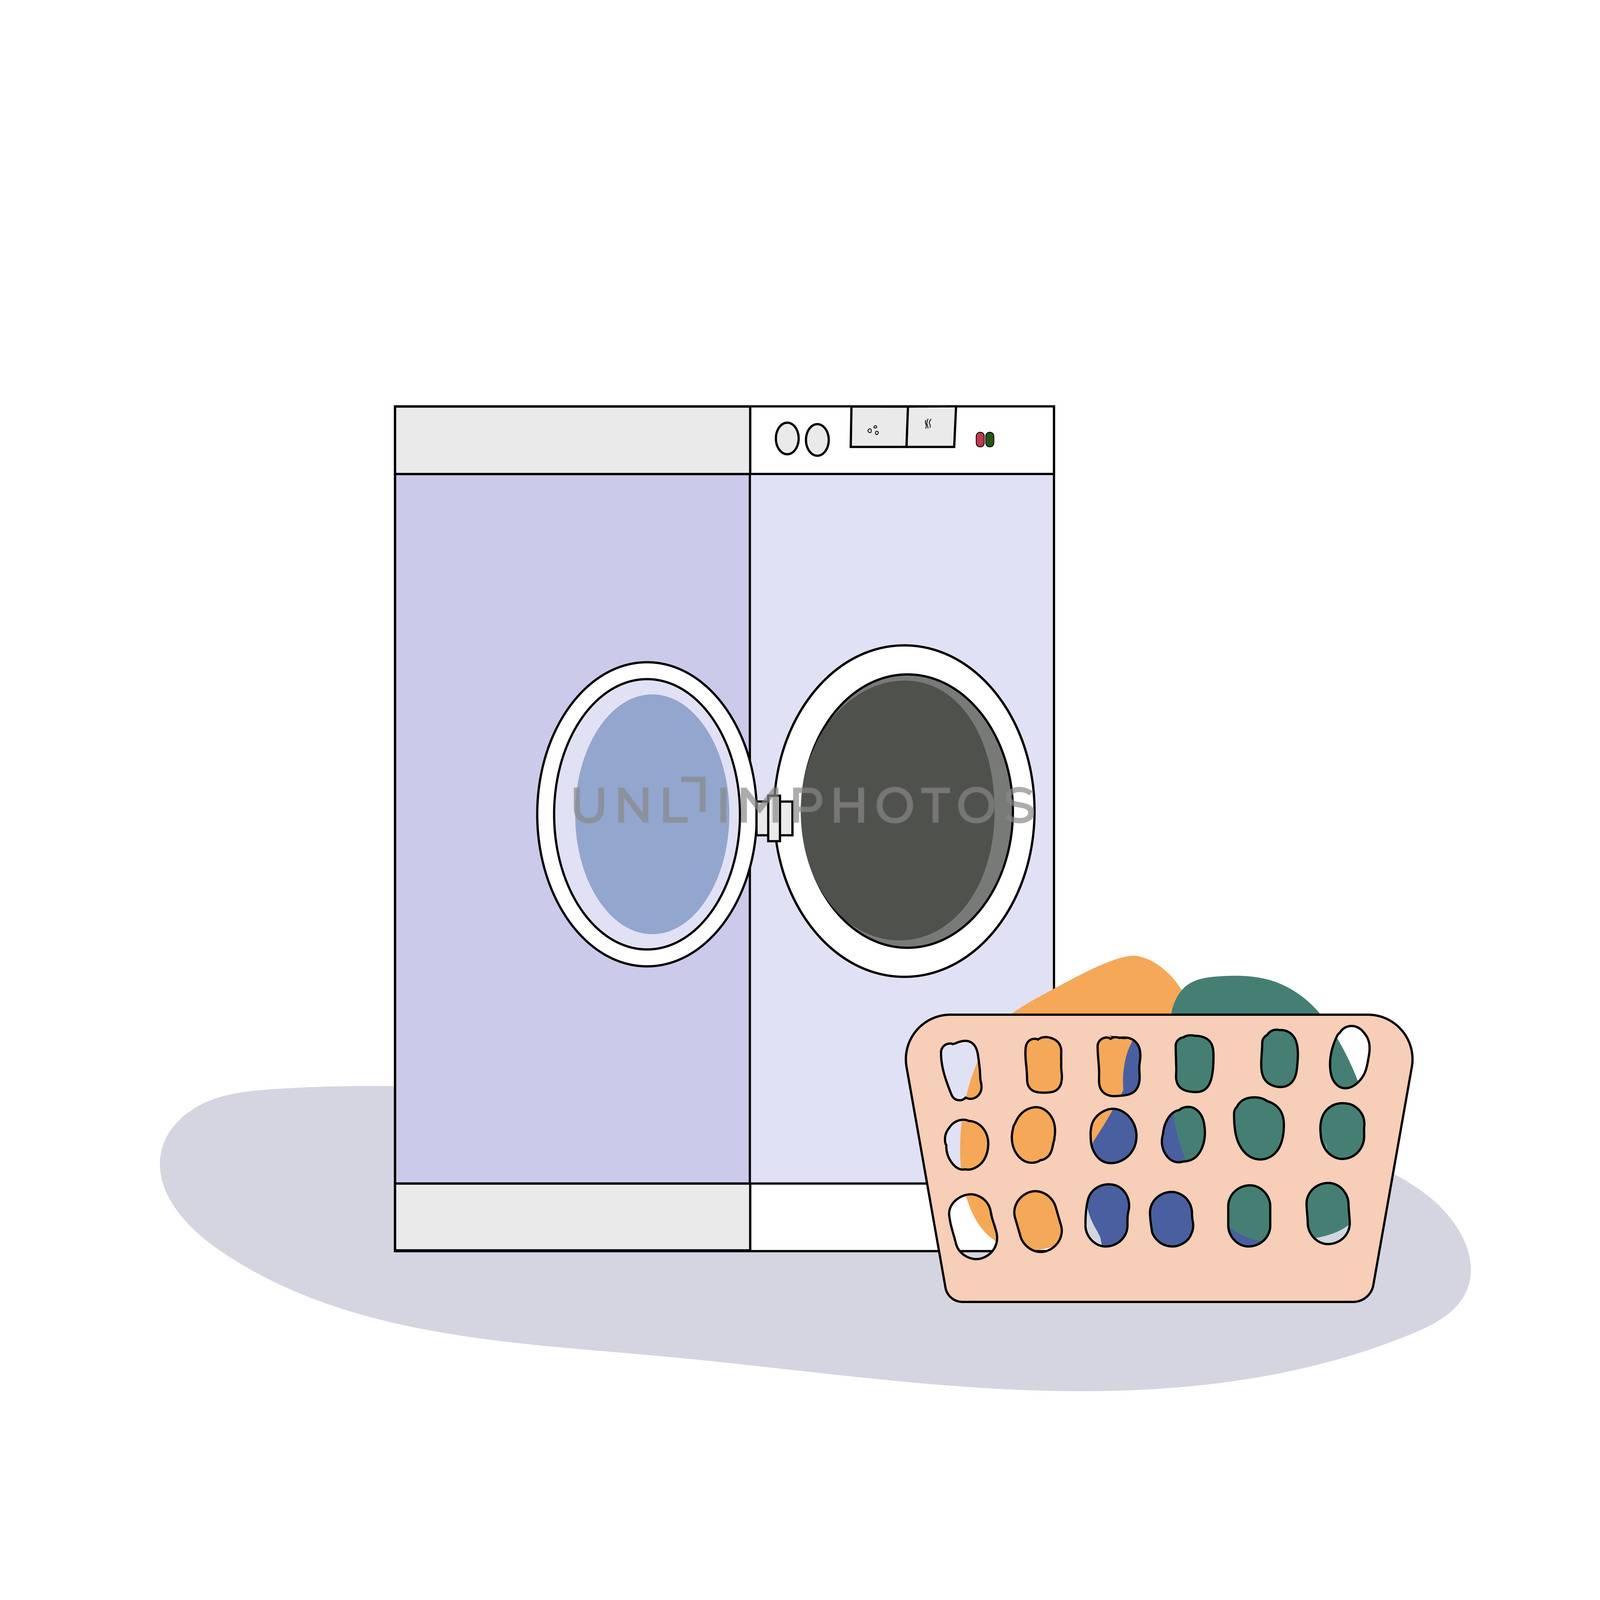 Broken washing machine with water around in flat style. Modern illustration. by zaryov